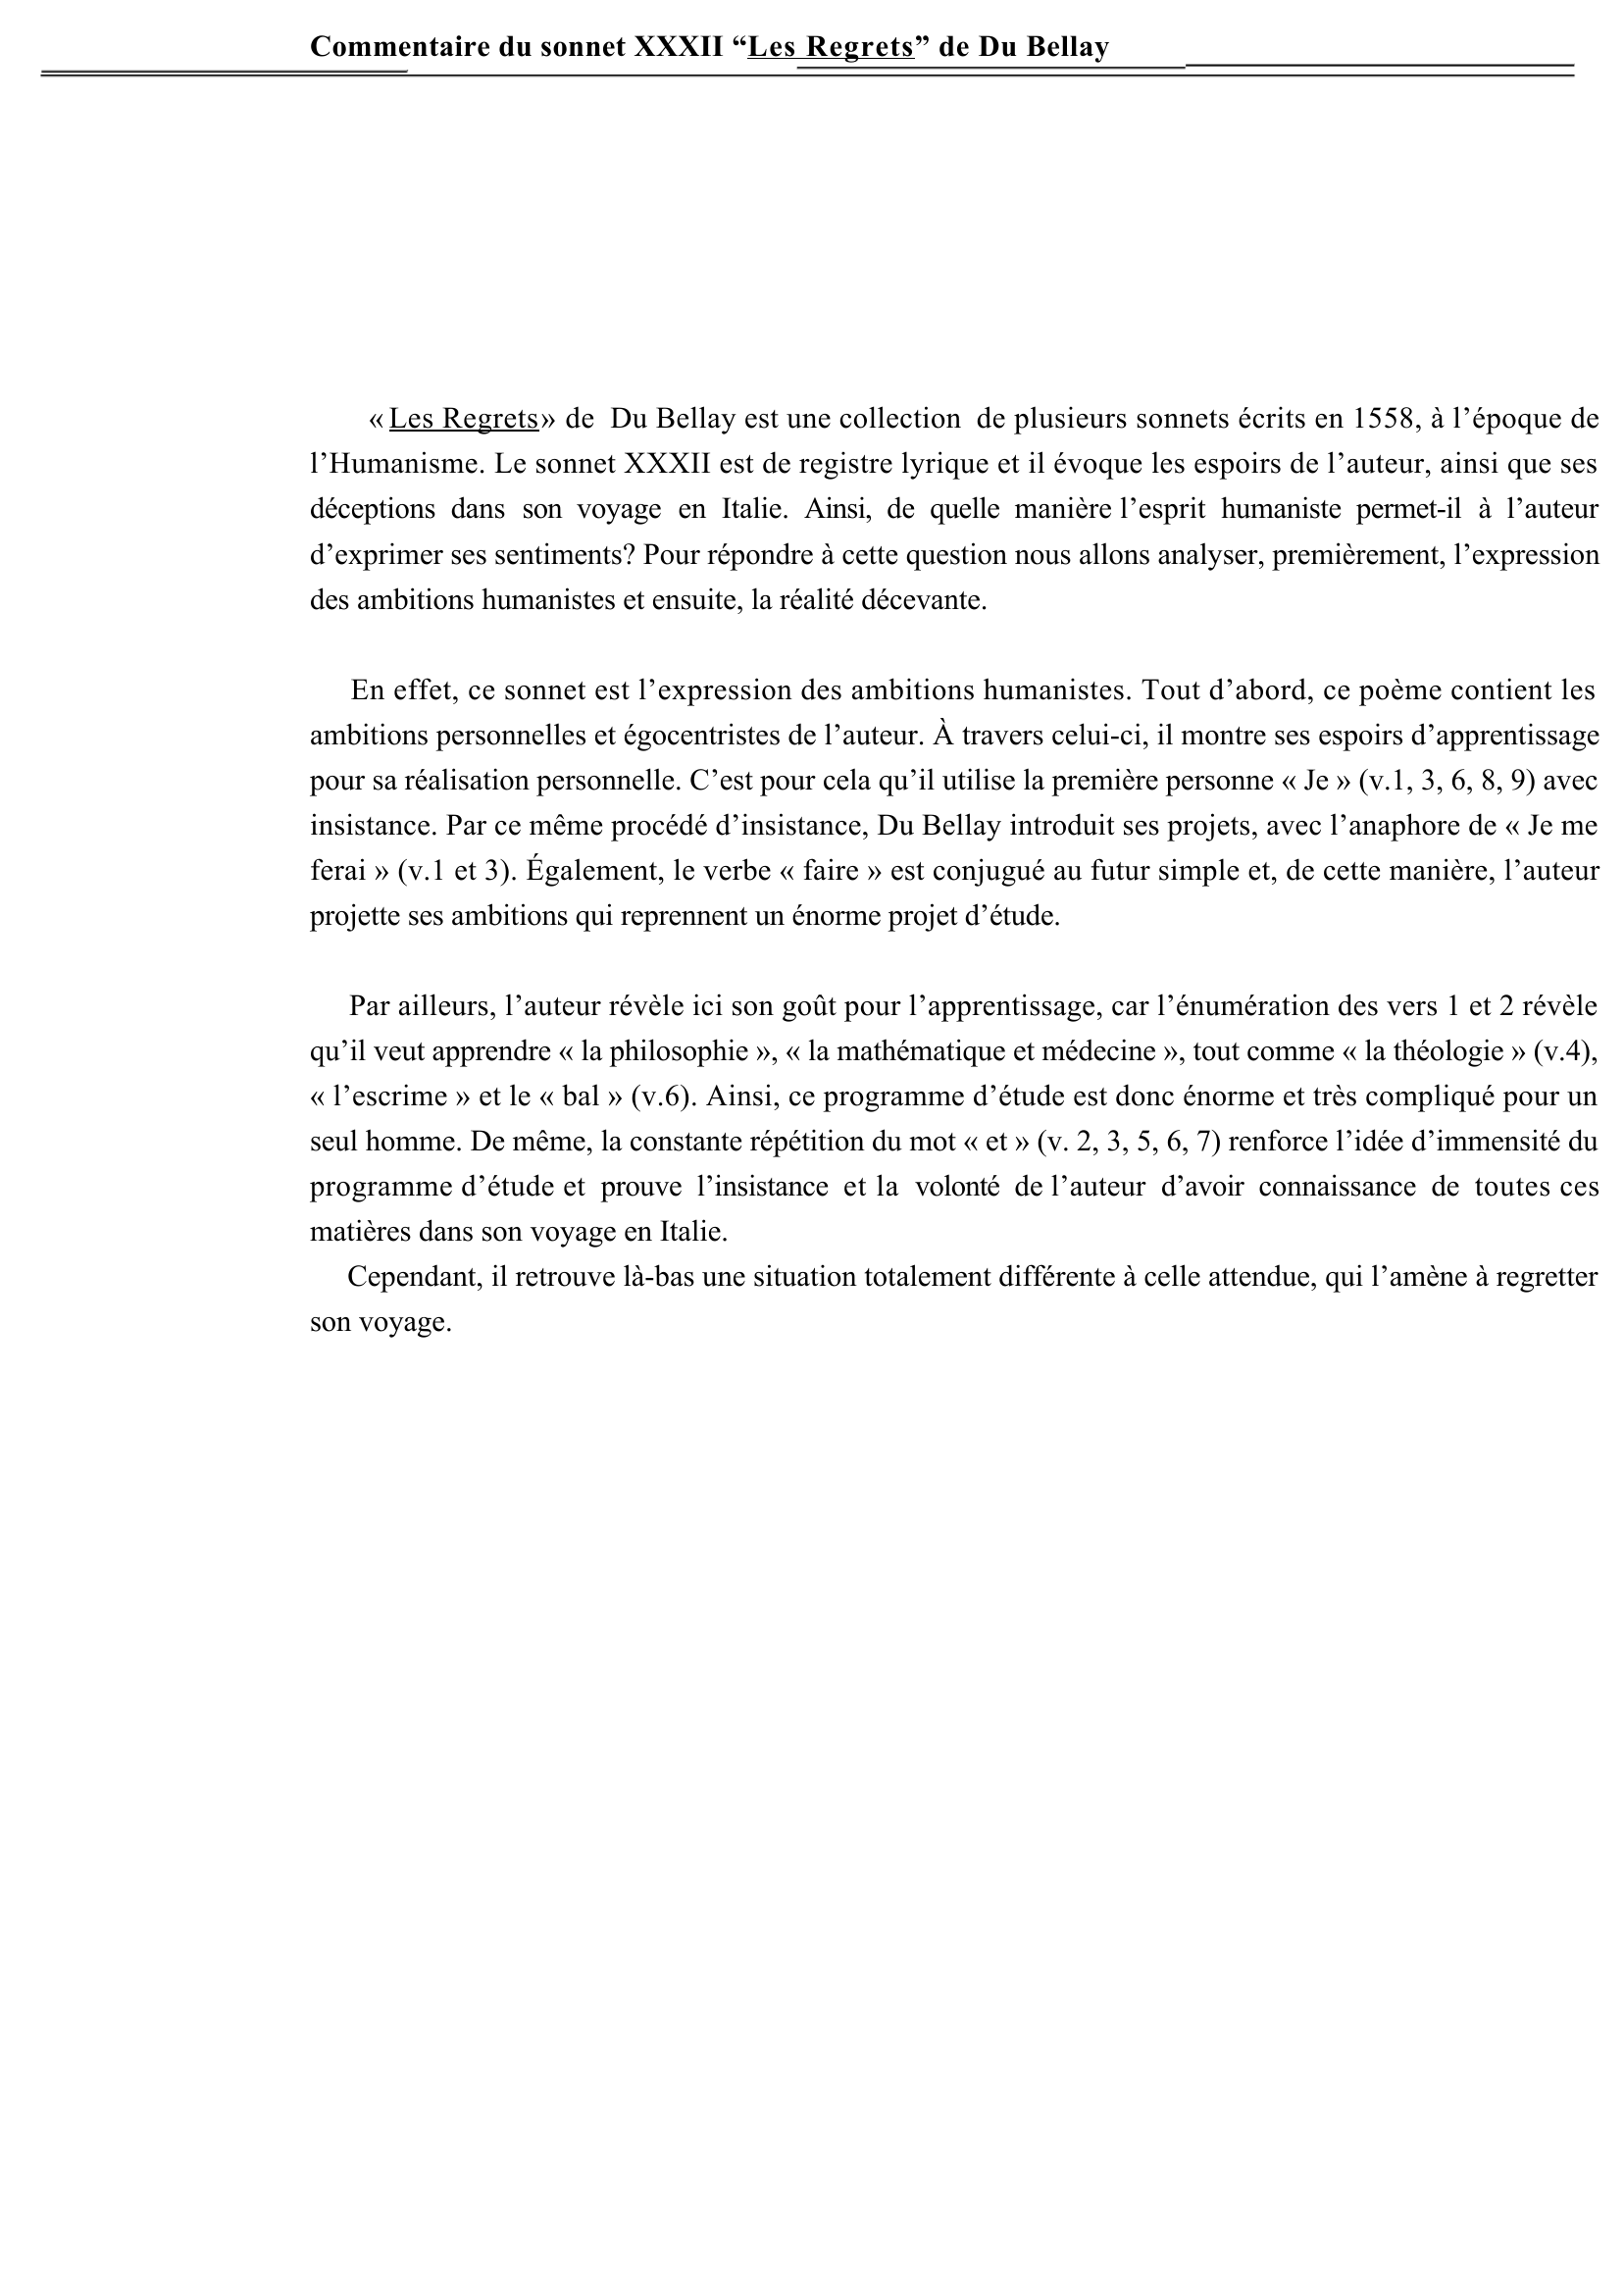 Prévisualisation du document Commentaire:  Sonnet XXXII (32), Les Regrets, Du Bellay